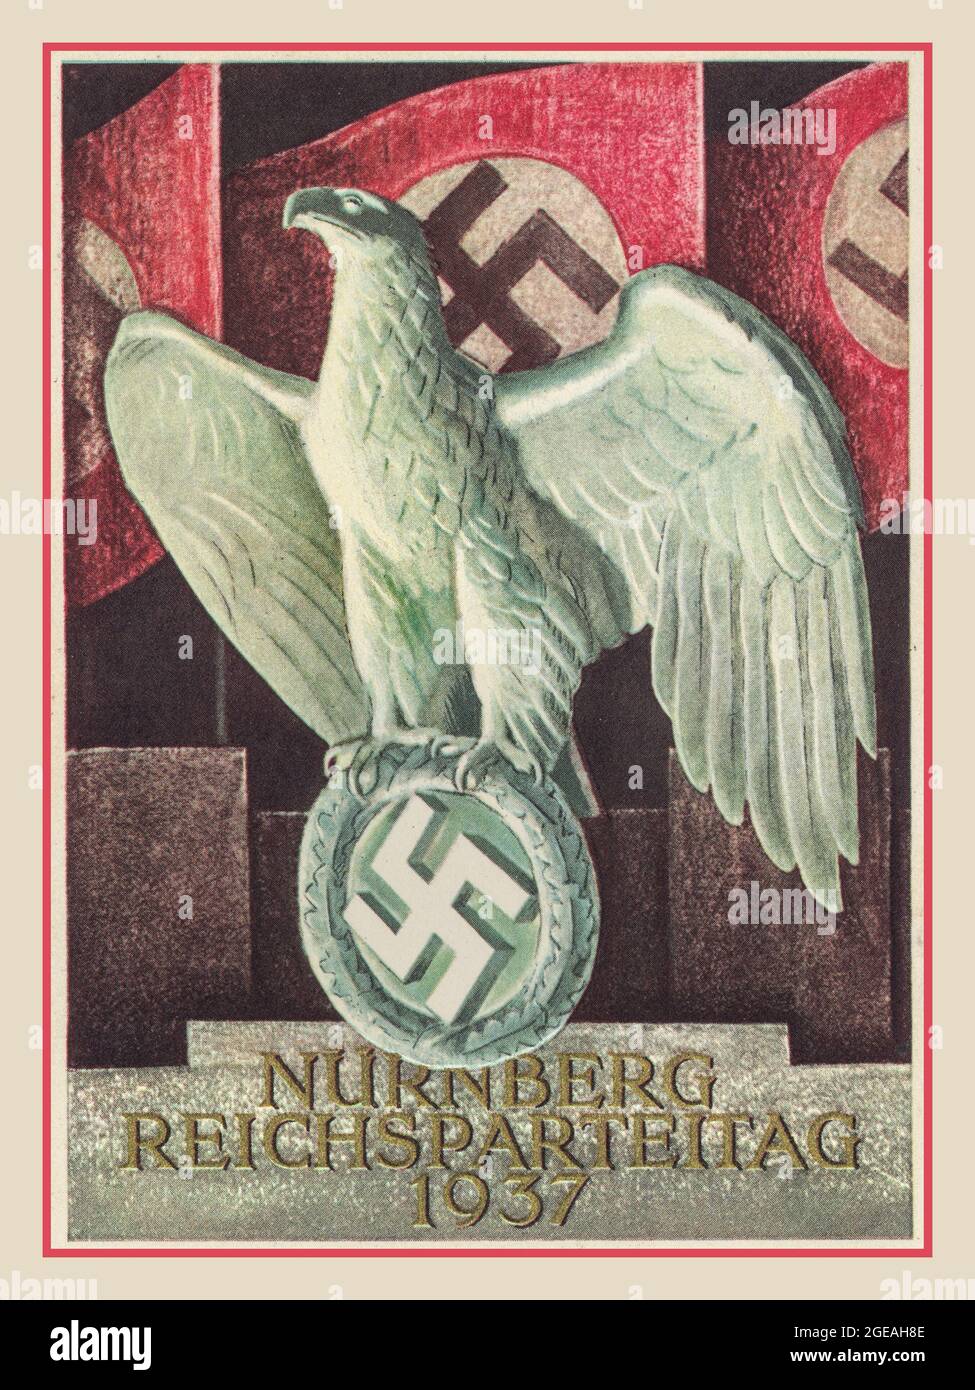 D'epoca Nazi Propaganda Poster NURNBERG REICHSPARTEITAG 1937 con l'aquila tedesca che tiene in mano il simbolo della swastika con le bandiere della swastika sullo sfondo. Foto Stock